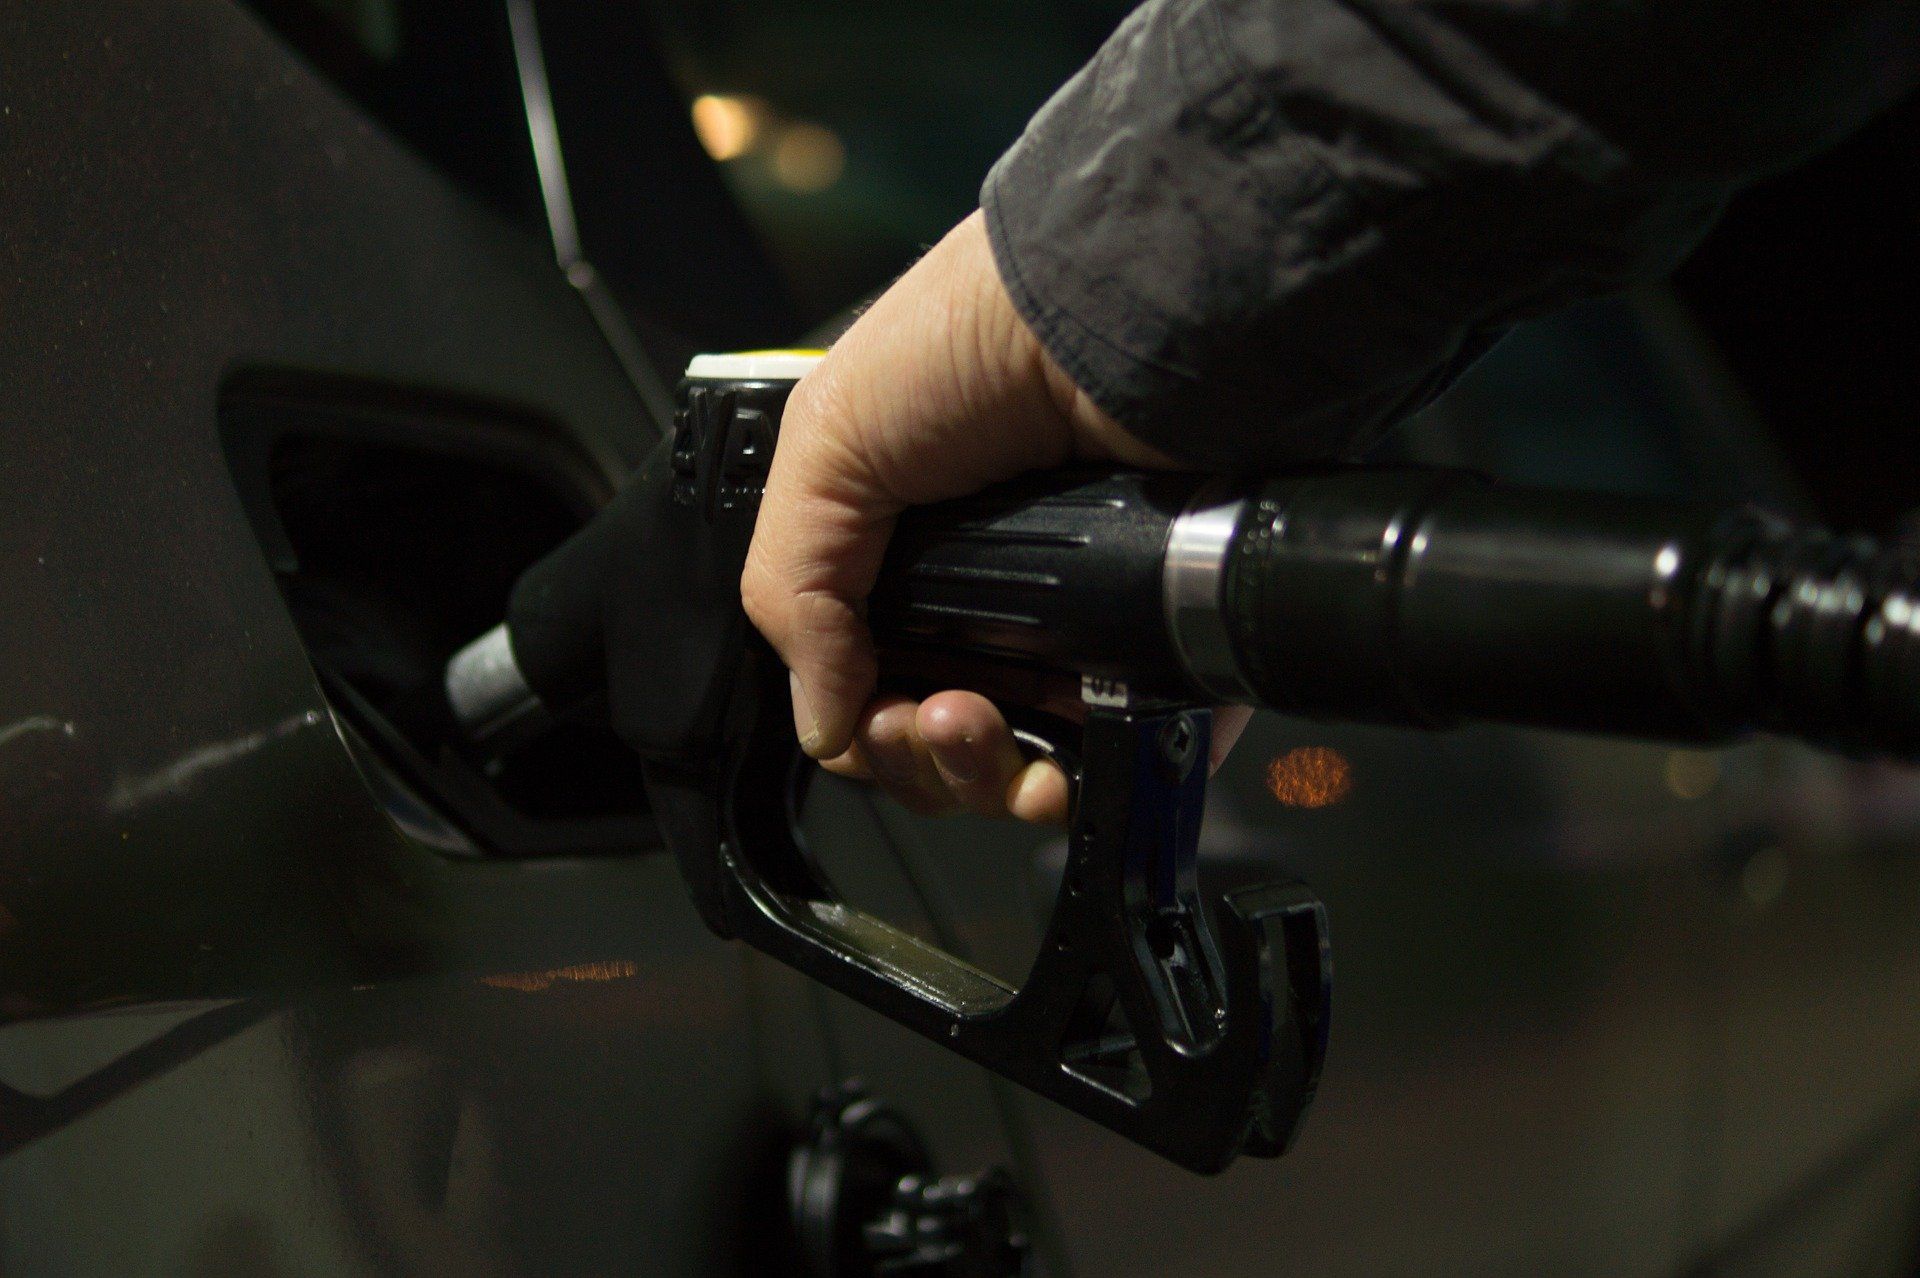 Fuel price June 6, 2022: Petrol Rs 96.72, diesel Rs 89.62 in Delhi